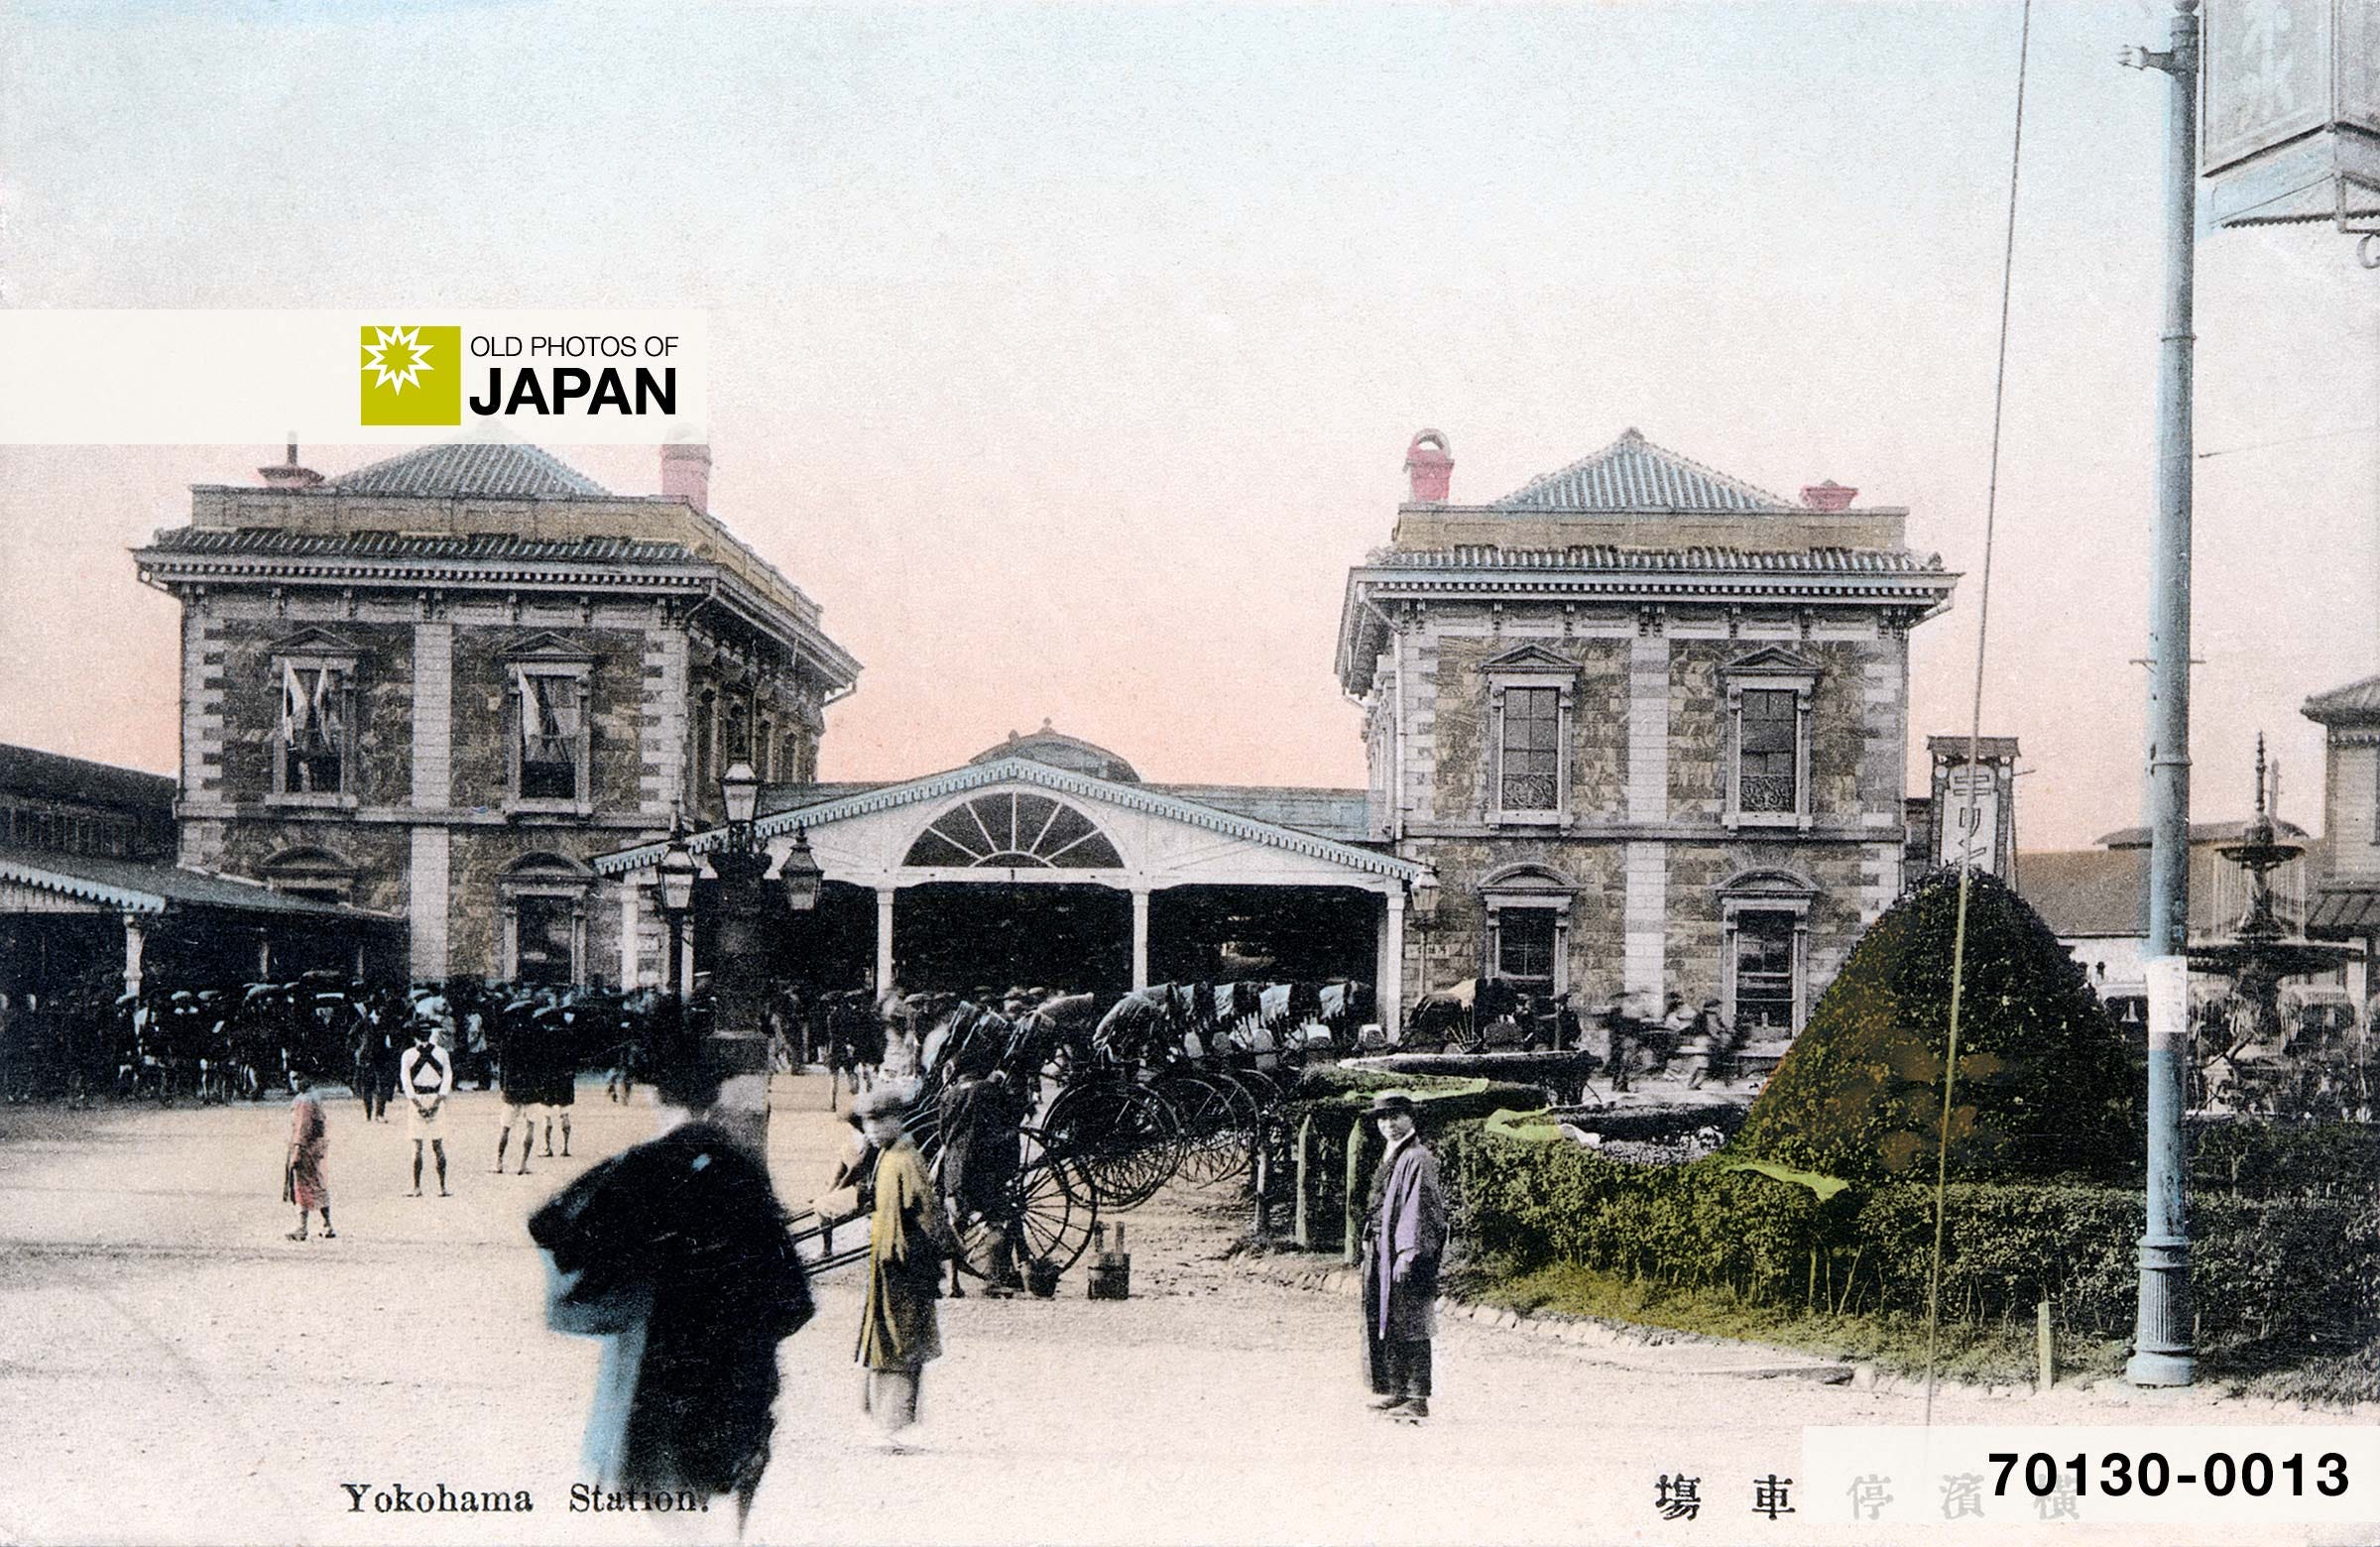 70130-0013 - Yokohama Station, 1900s